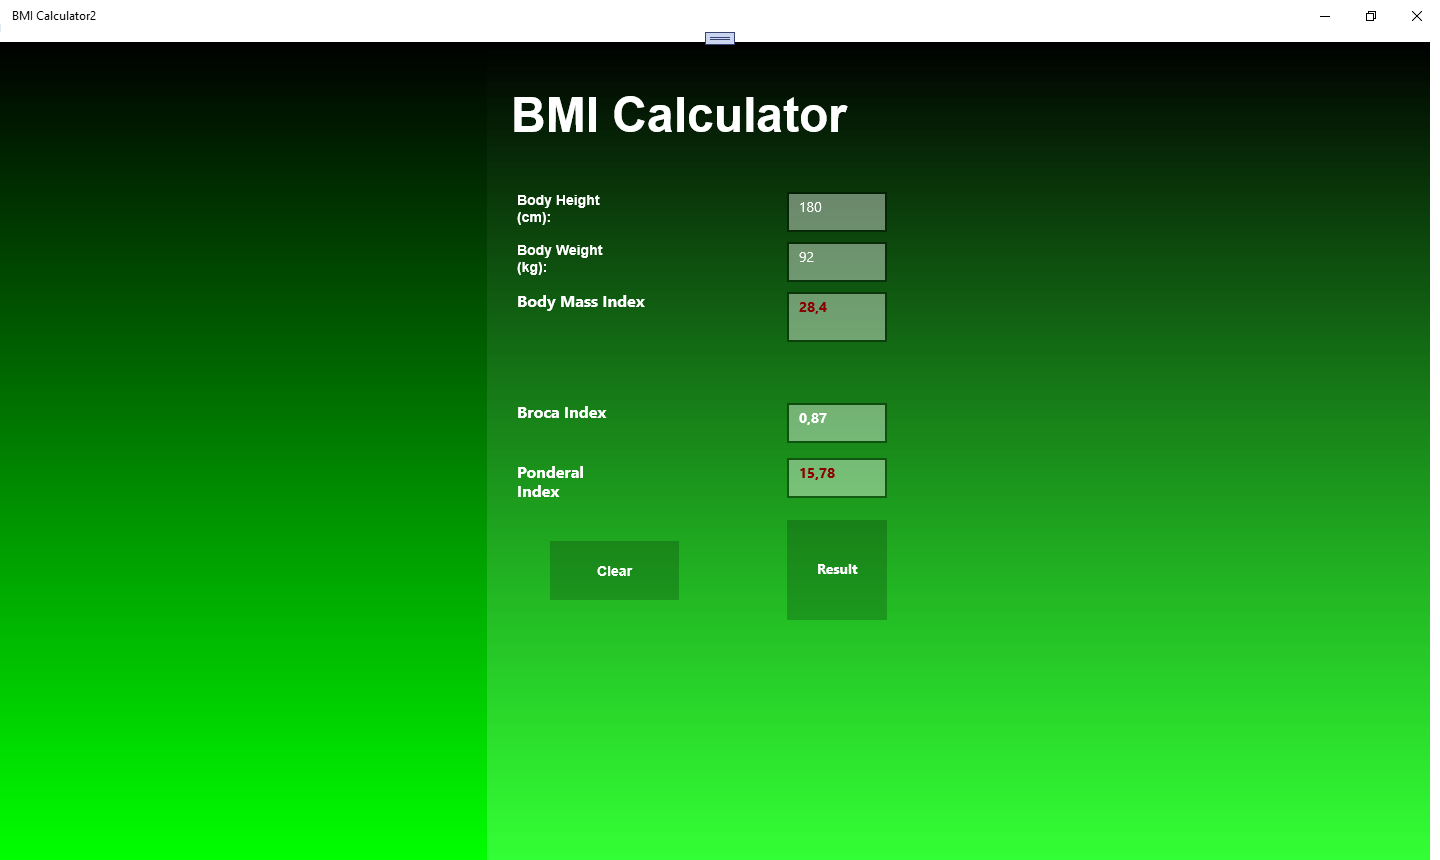 BMI Calculator2